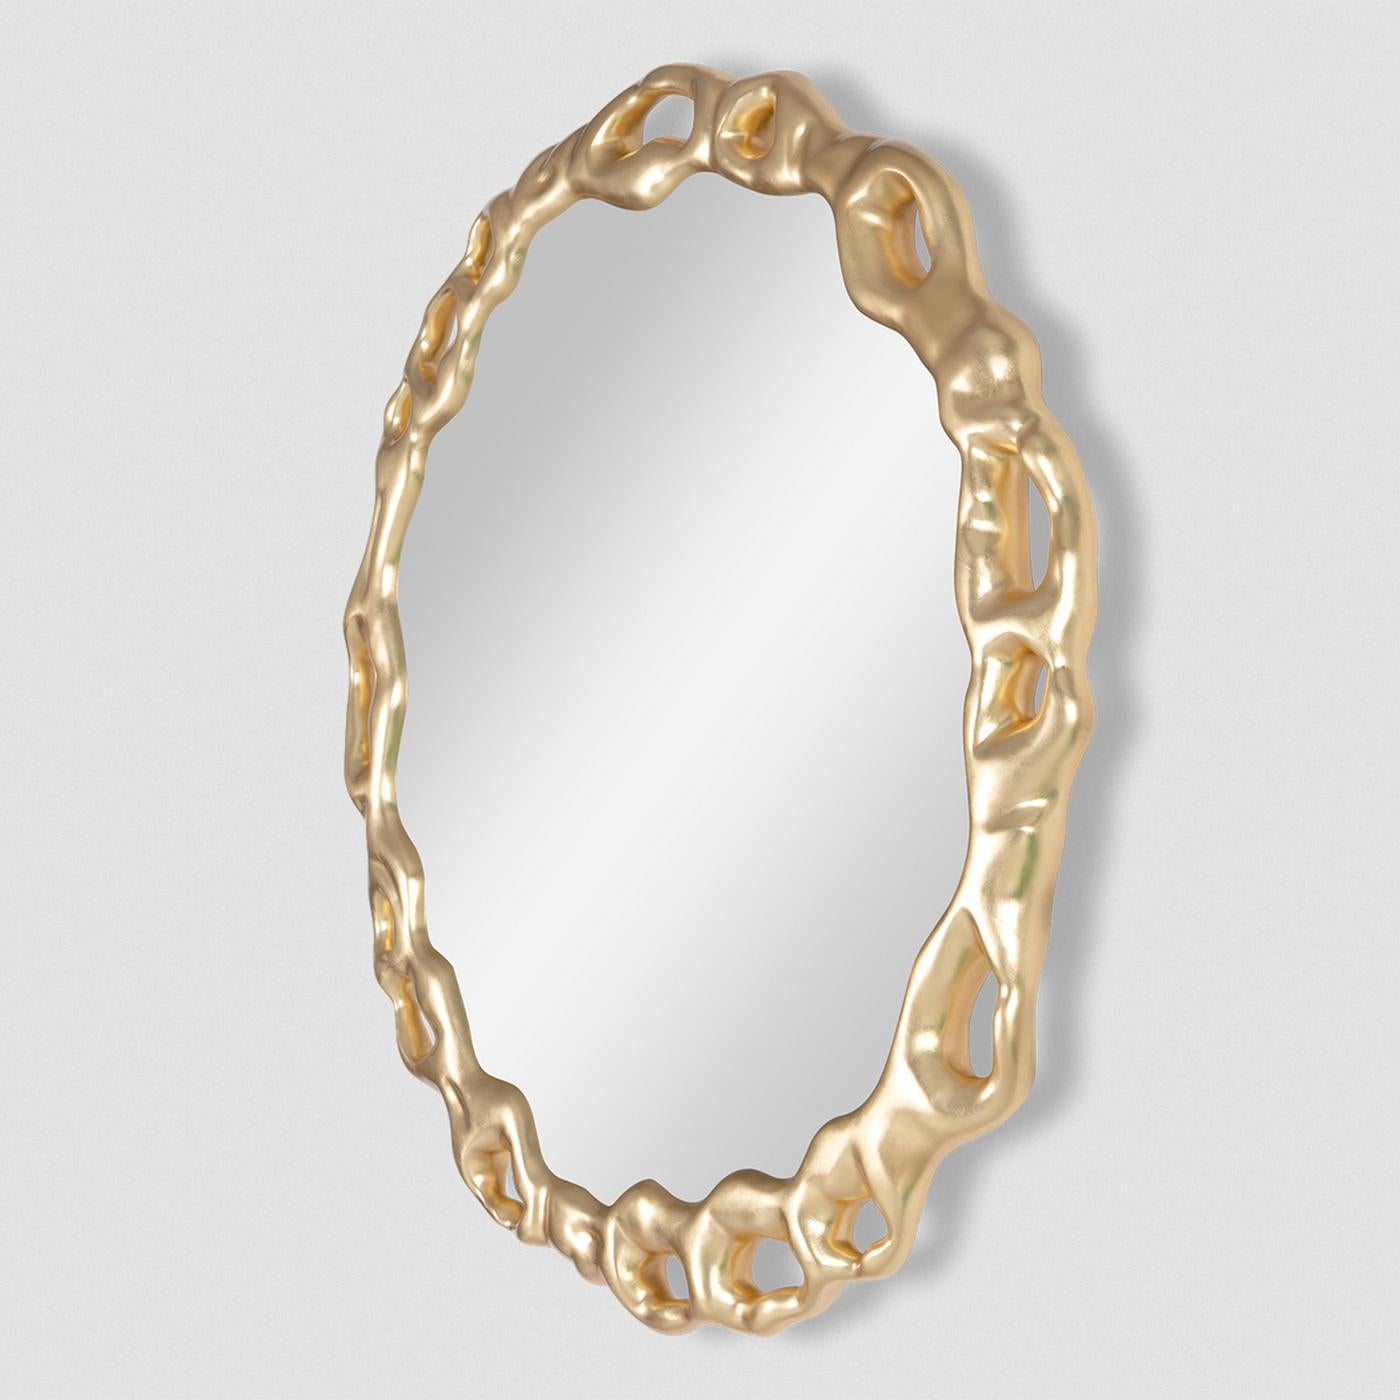 Spiegel Rising mit handgeschnitztem Rahmen aus massivem Mahagoni,
handbemalt mit Blattgold. Mit rundem Spiegelglas.